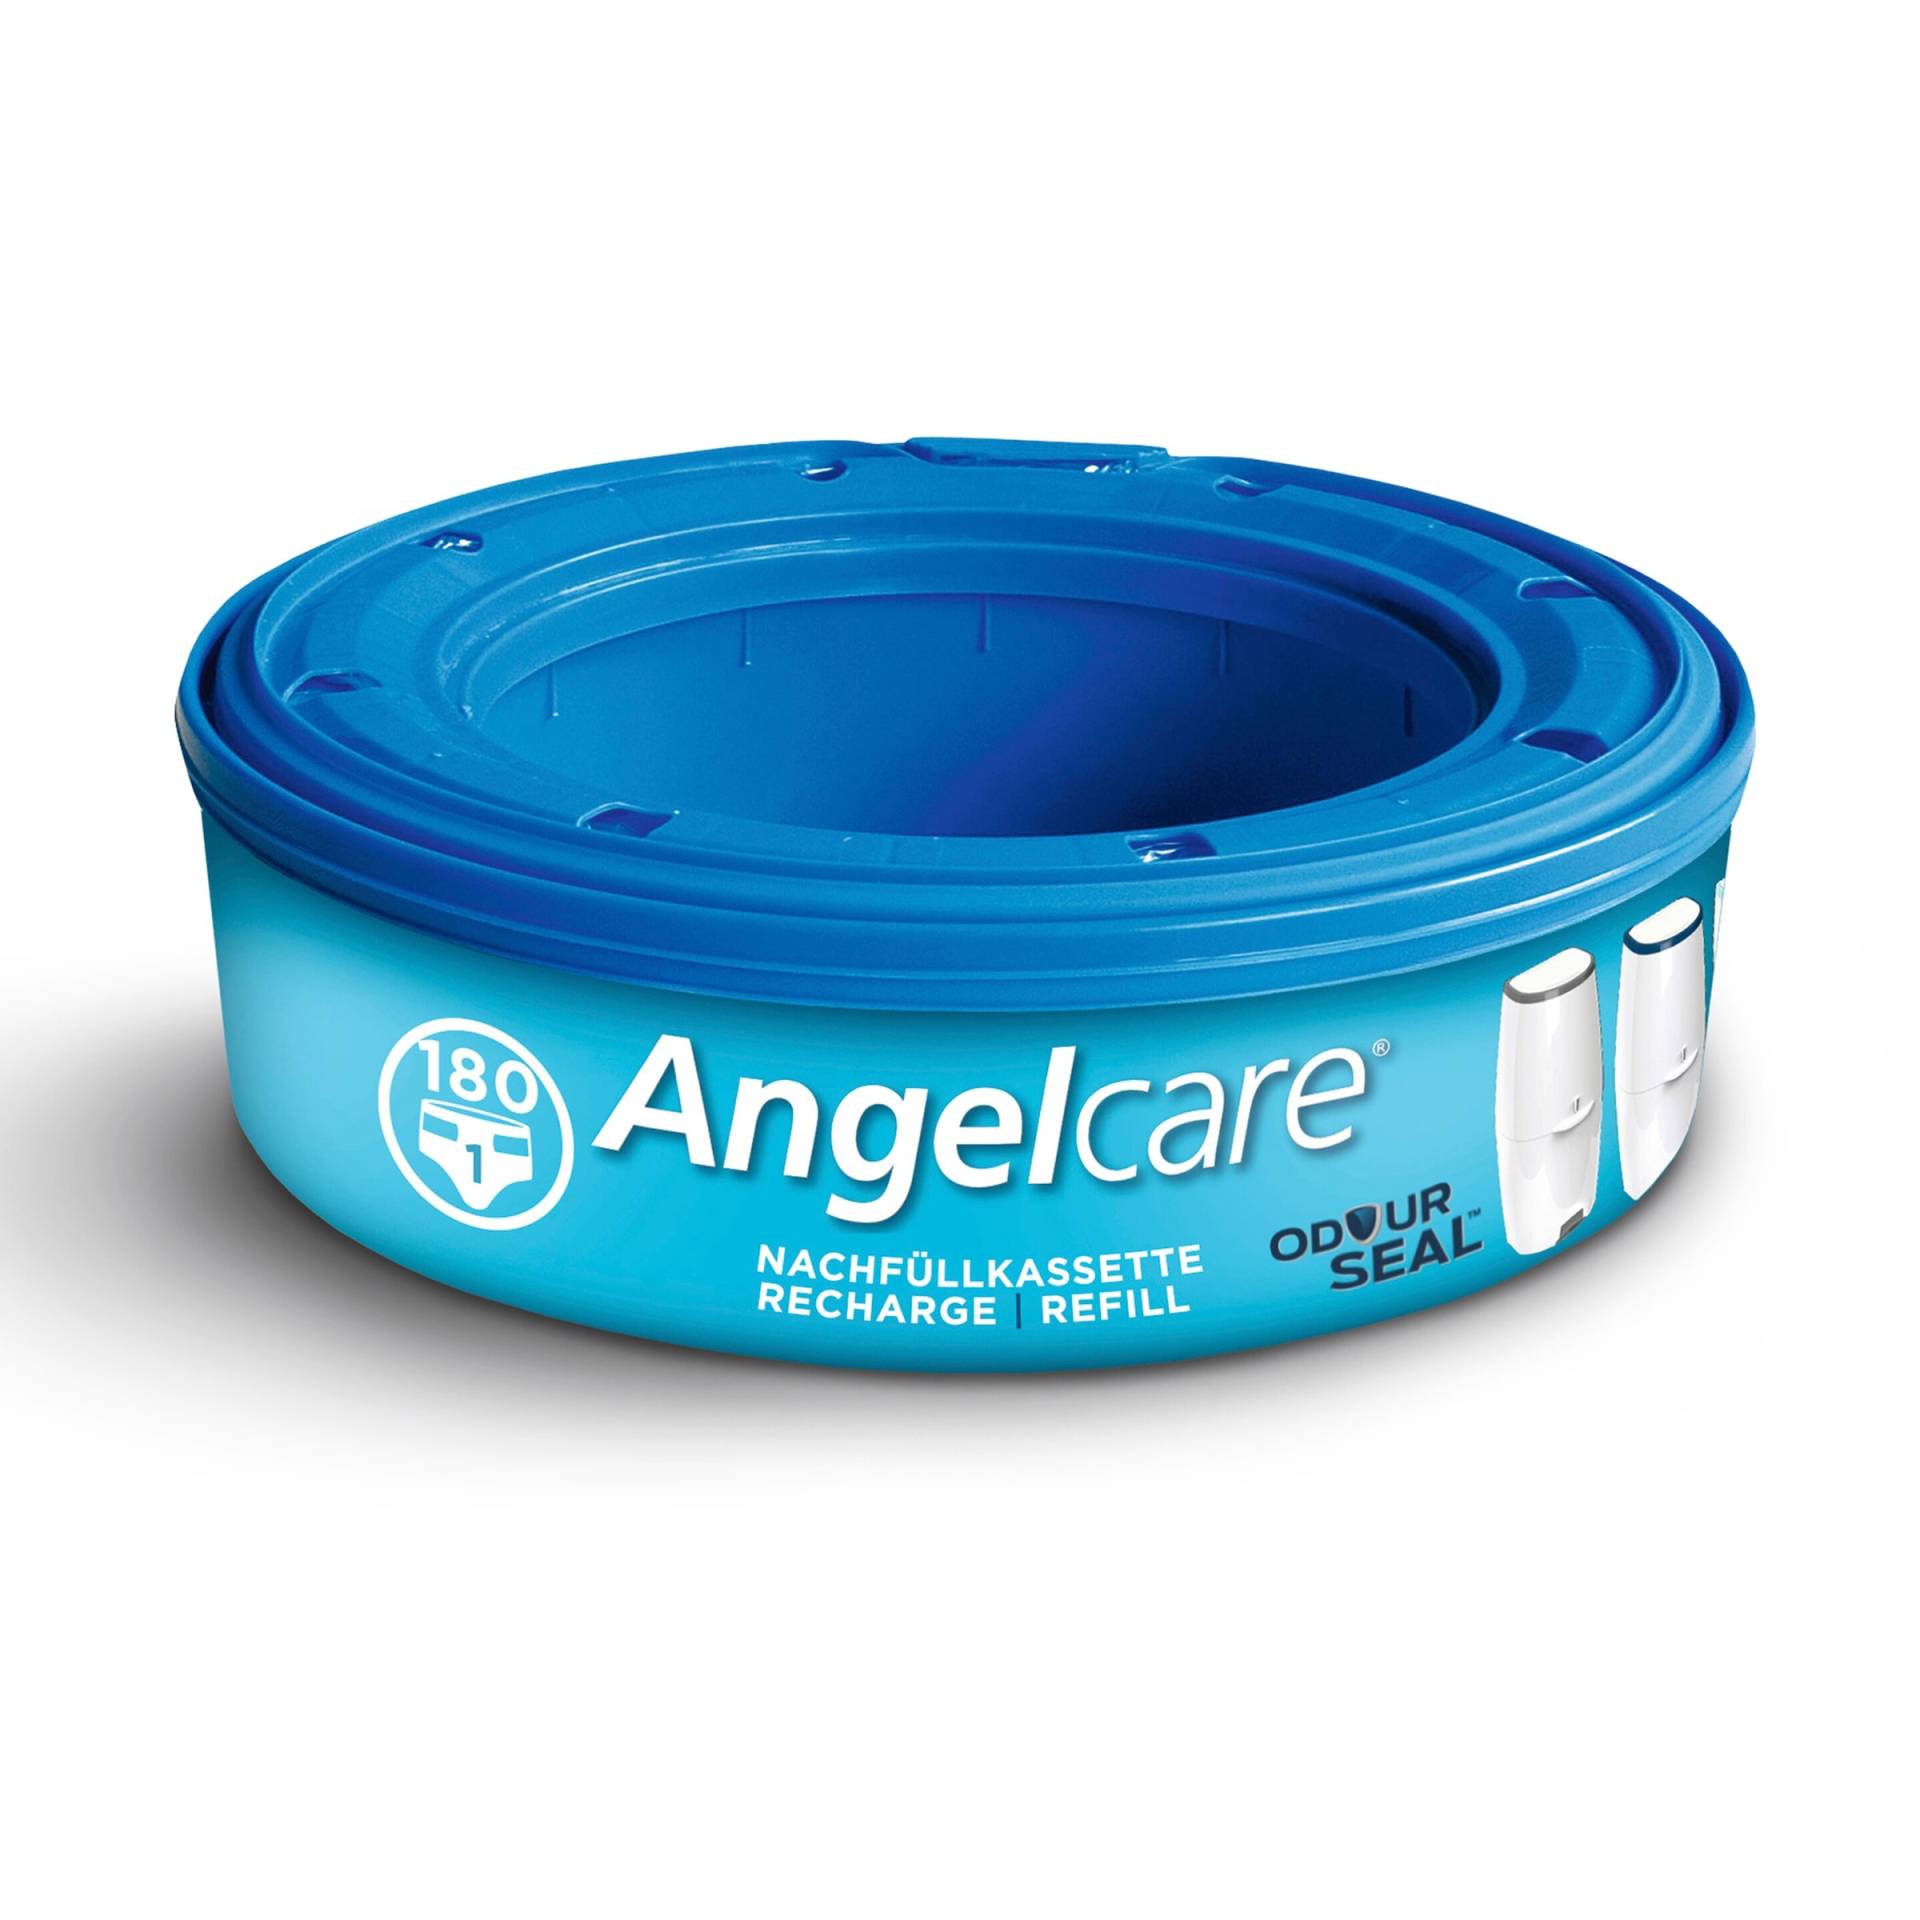 Angelcare Nachfüllkassette für Windeleimer Comfort, Comfort Plus und Deluxe von Angelcare